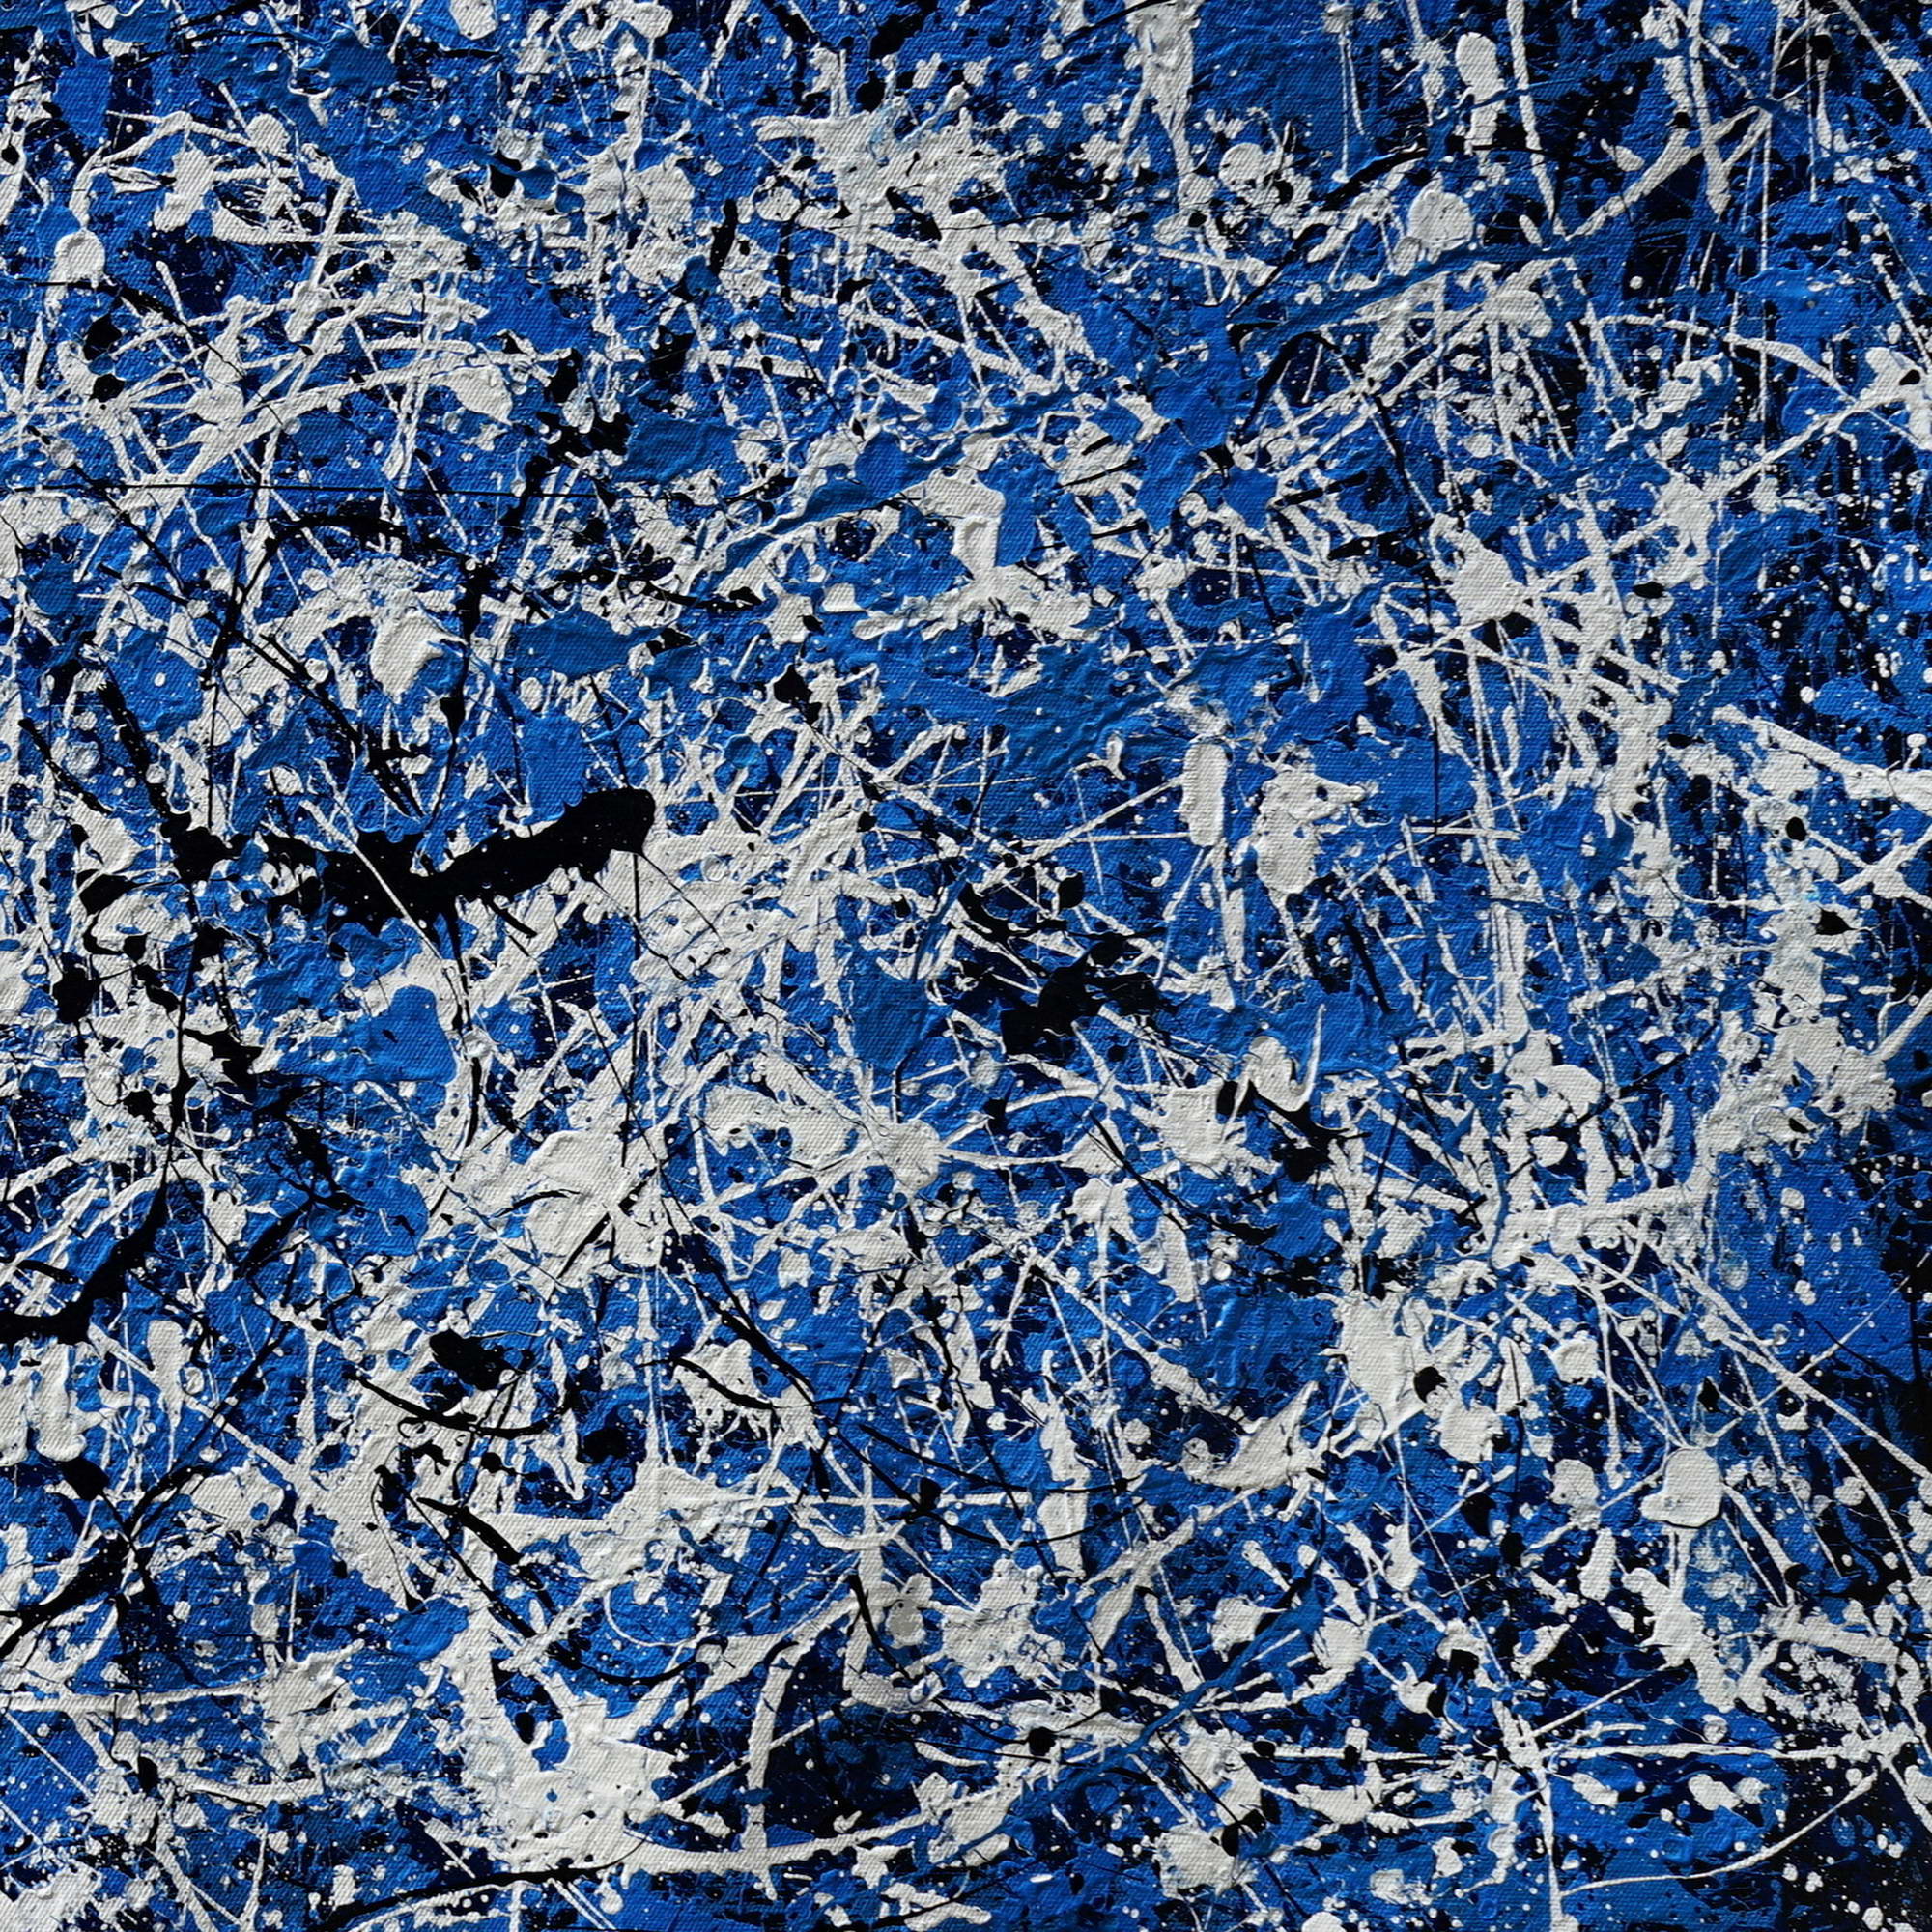 Composition abstraite peinte à la main dans le style Blue Pollock 75x150cm